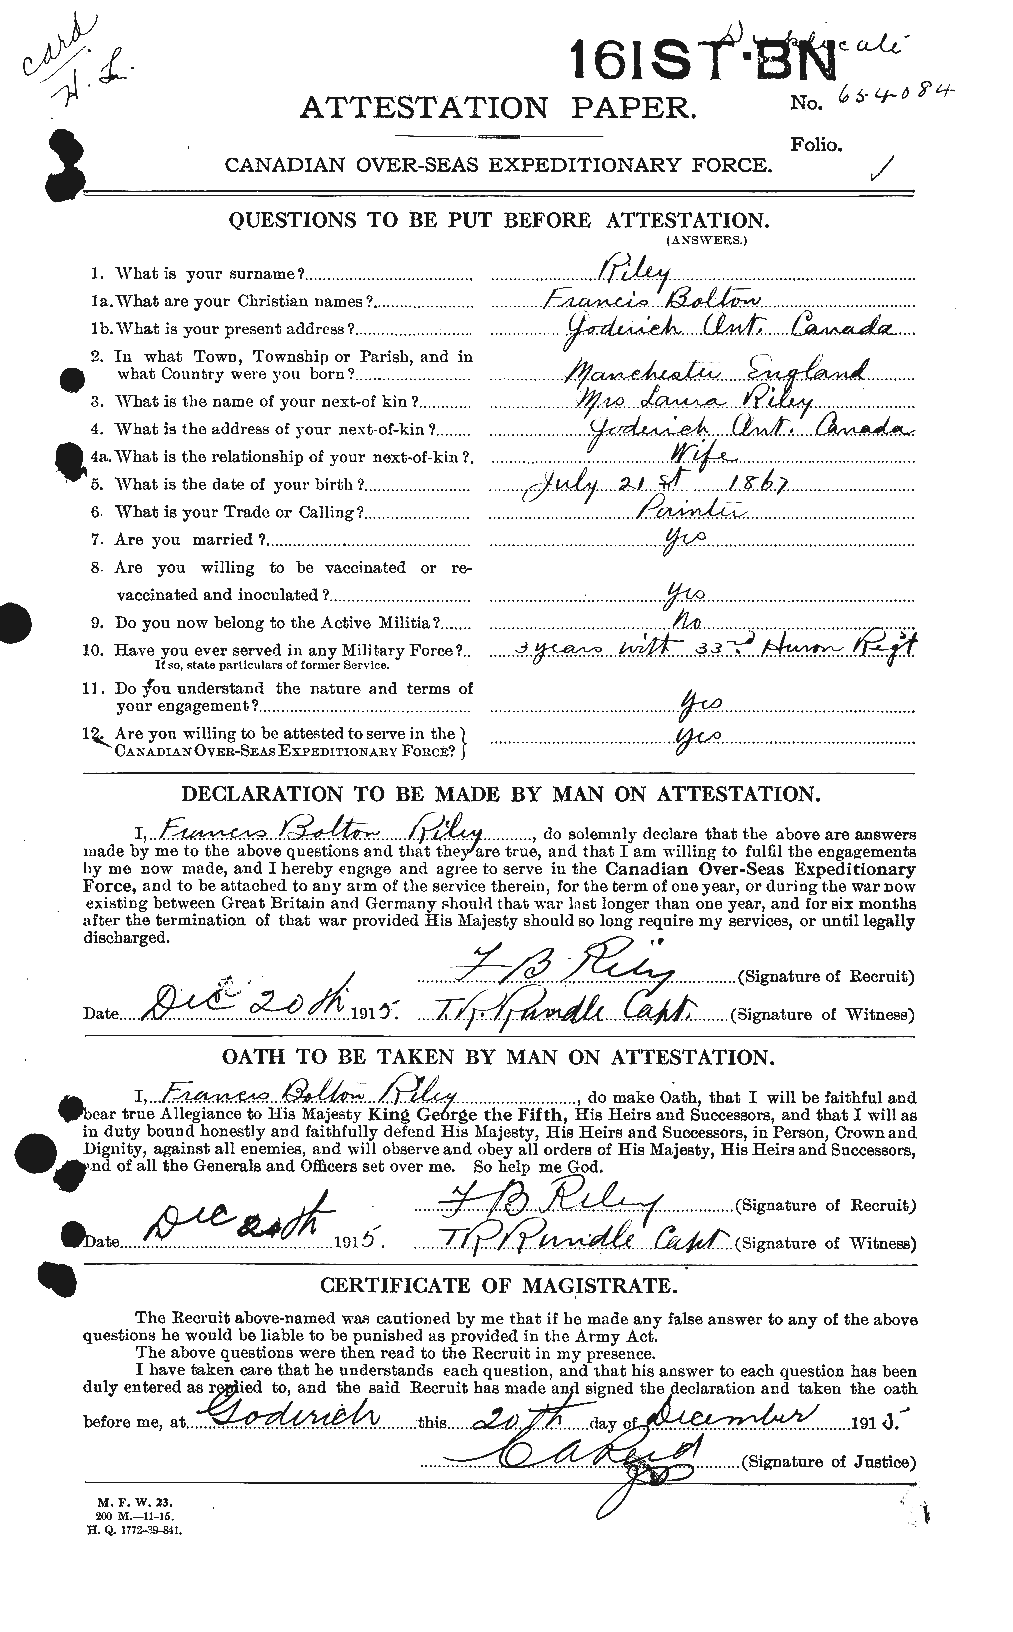 Dossiers du Personnel de la Première Guerre mondiale - CEC 604647a